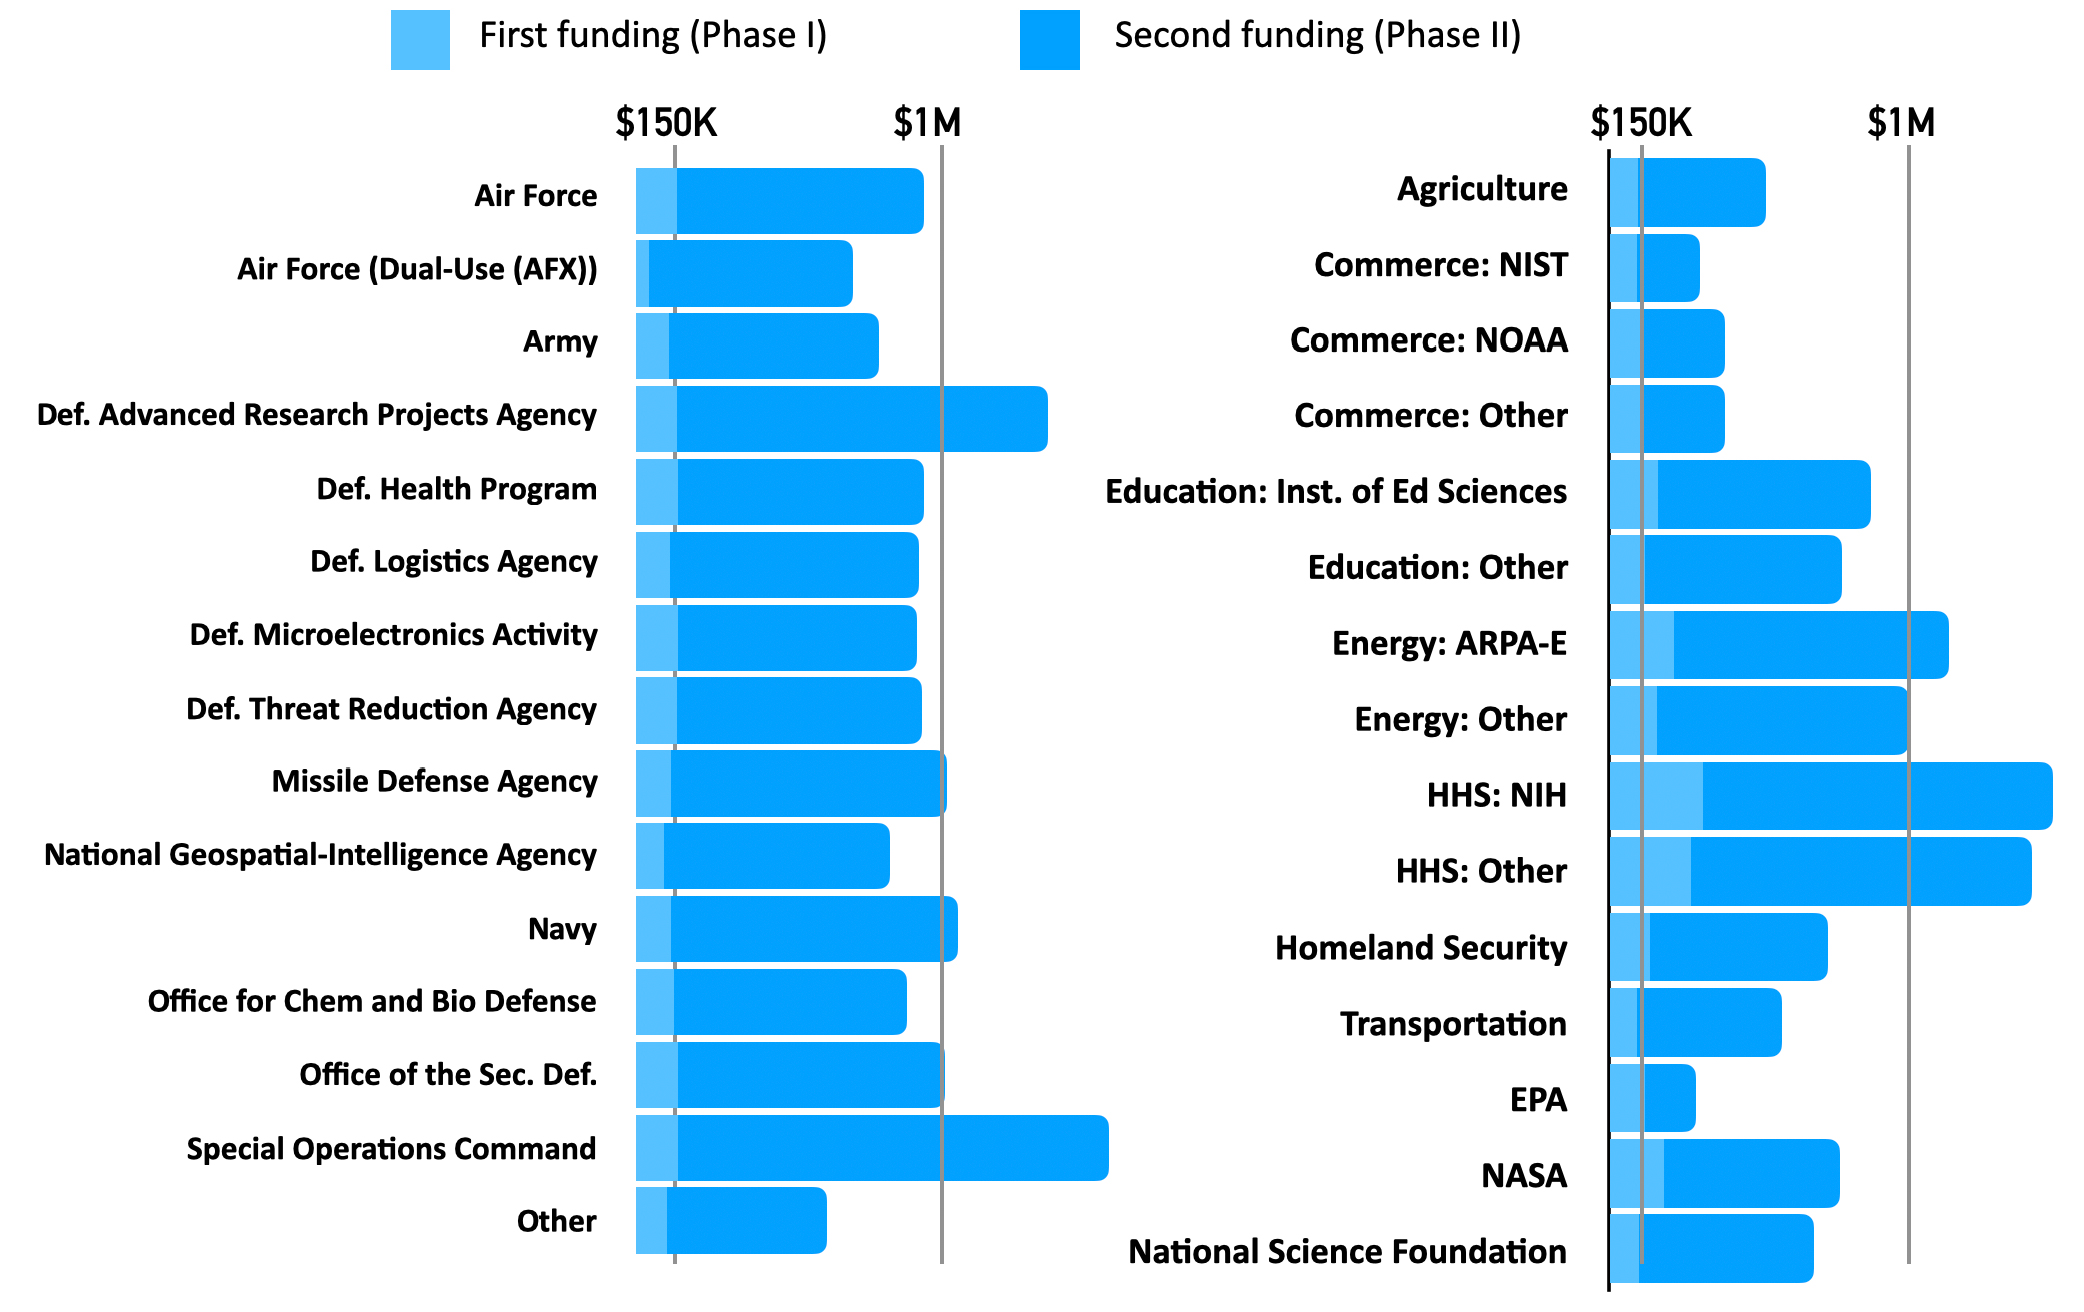 Average funding